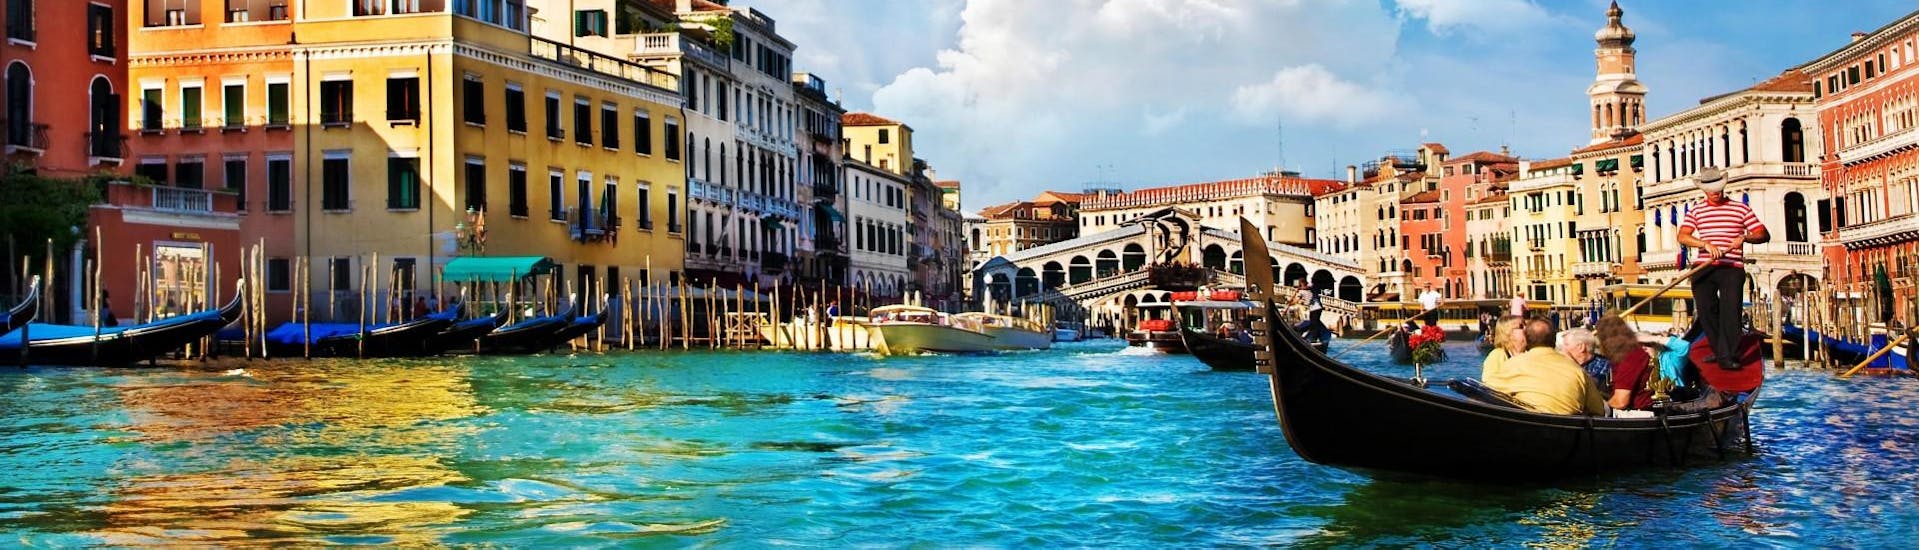 Paseo en barco por el Gran Canal de Venecia.